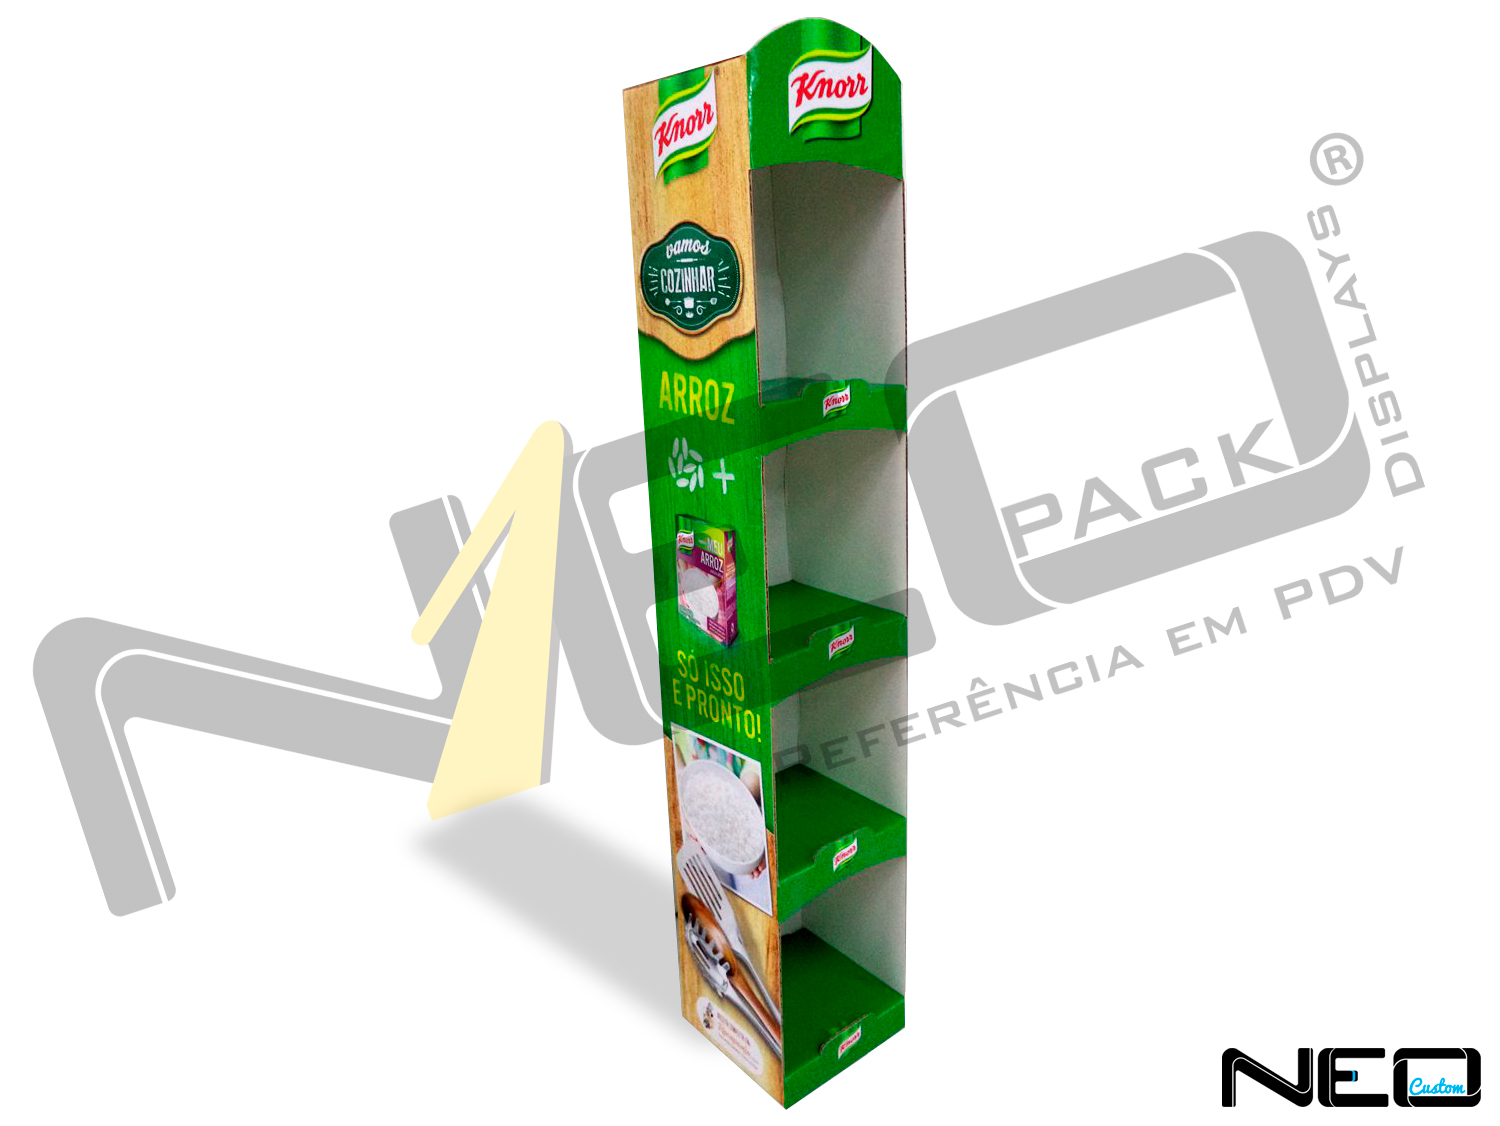 display de papelão expositor site_neopack_produtos_diversos_knorr-1500x1126